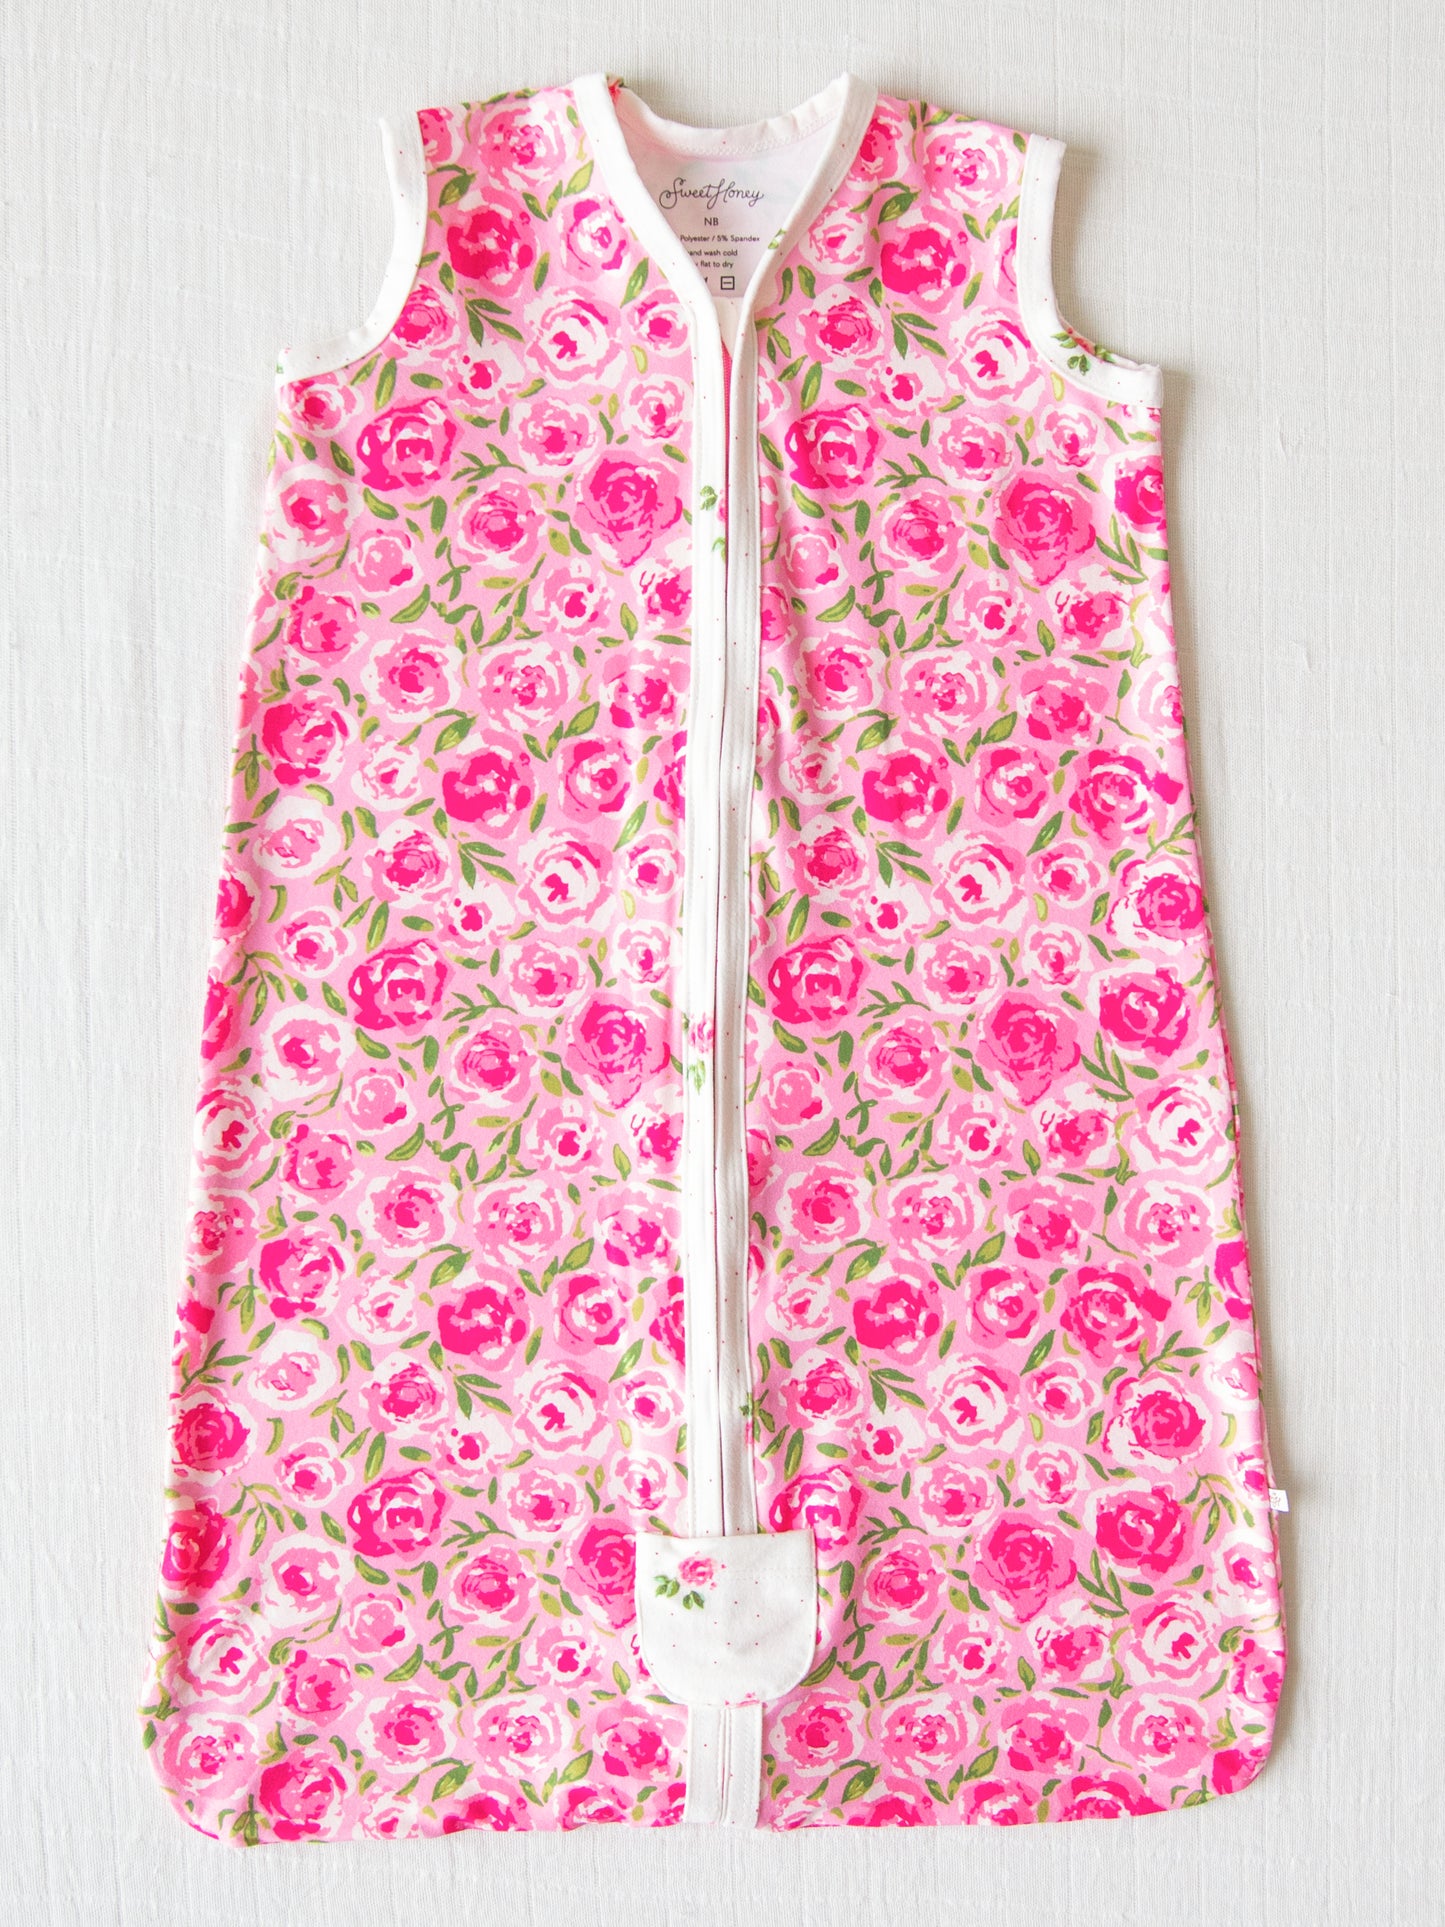 Dreamer Wearable Blanket - Covered in Roses